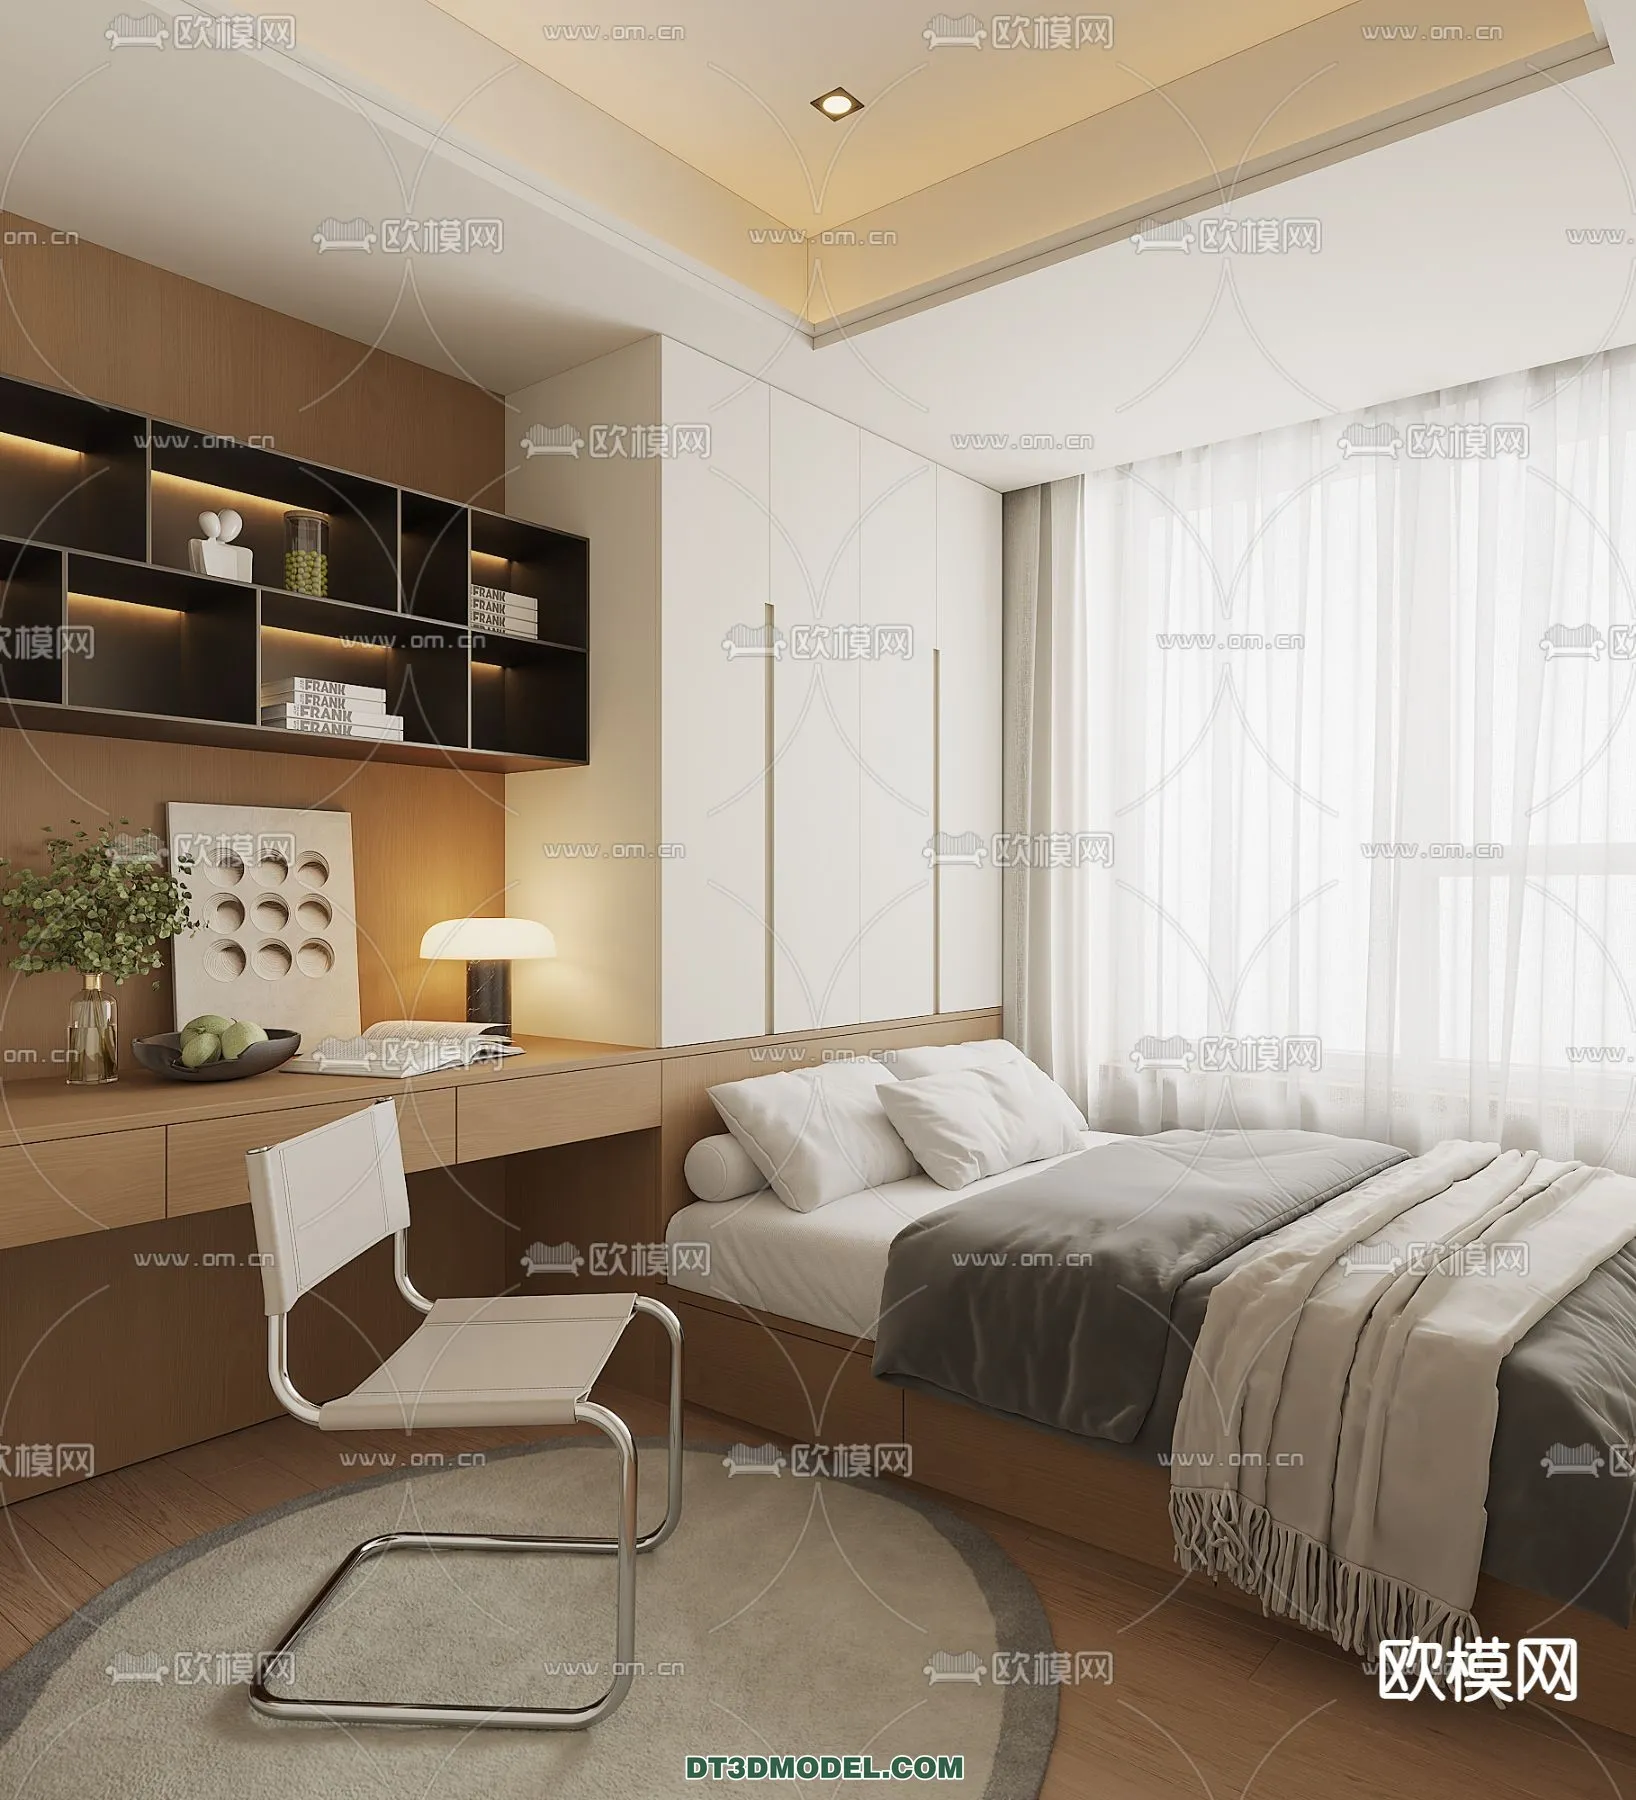 Tatami Bedroom – Japan Bedroom – 3D Scene – 013